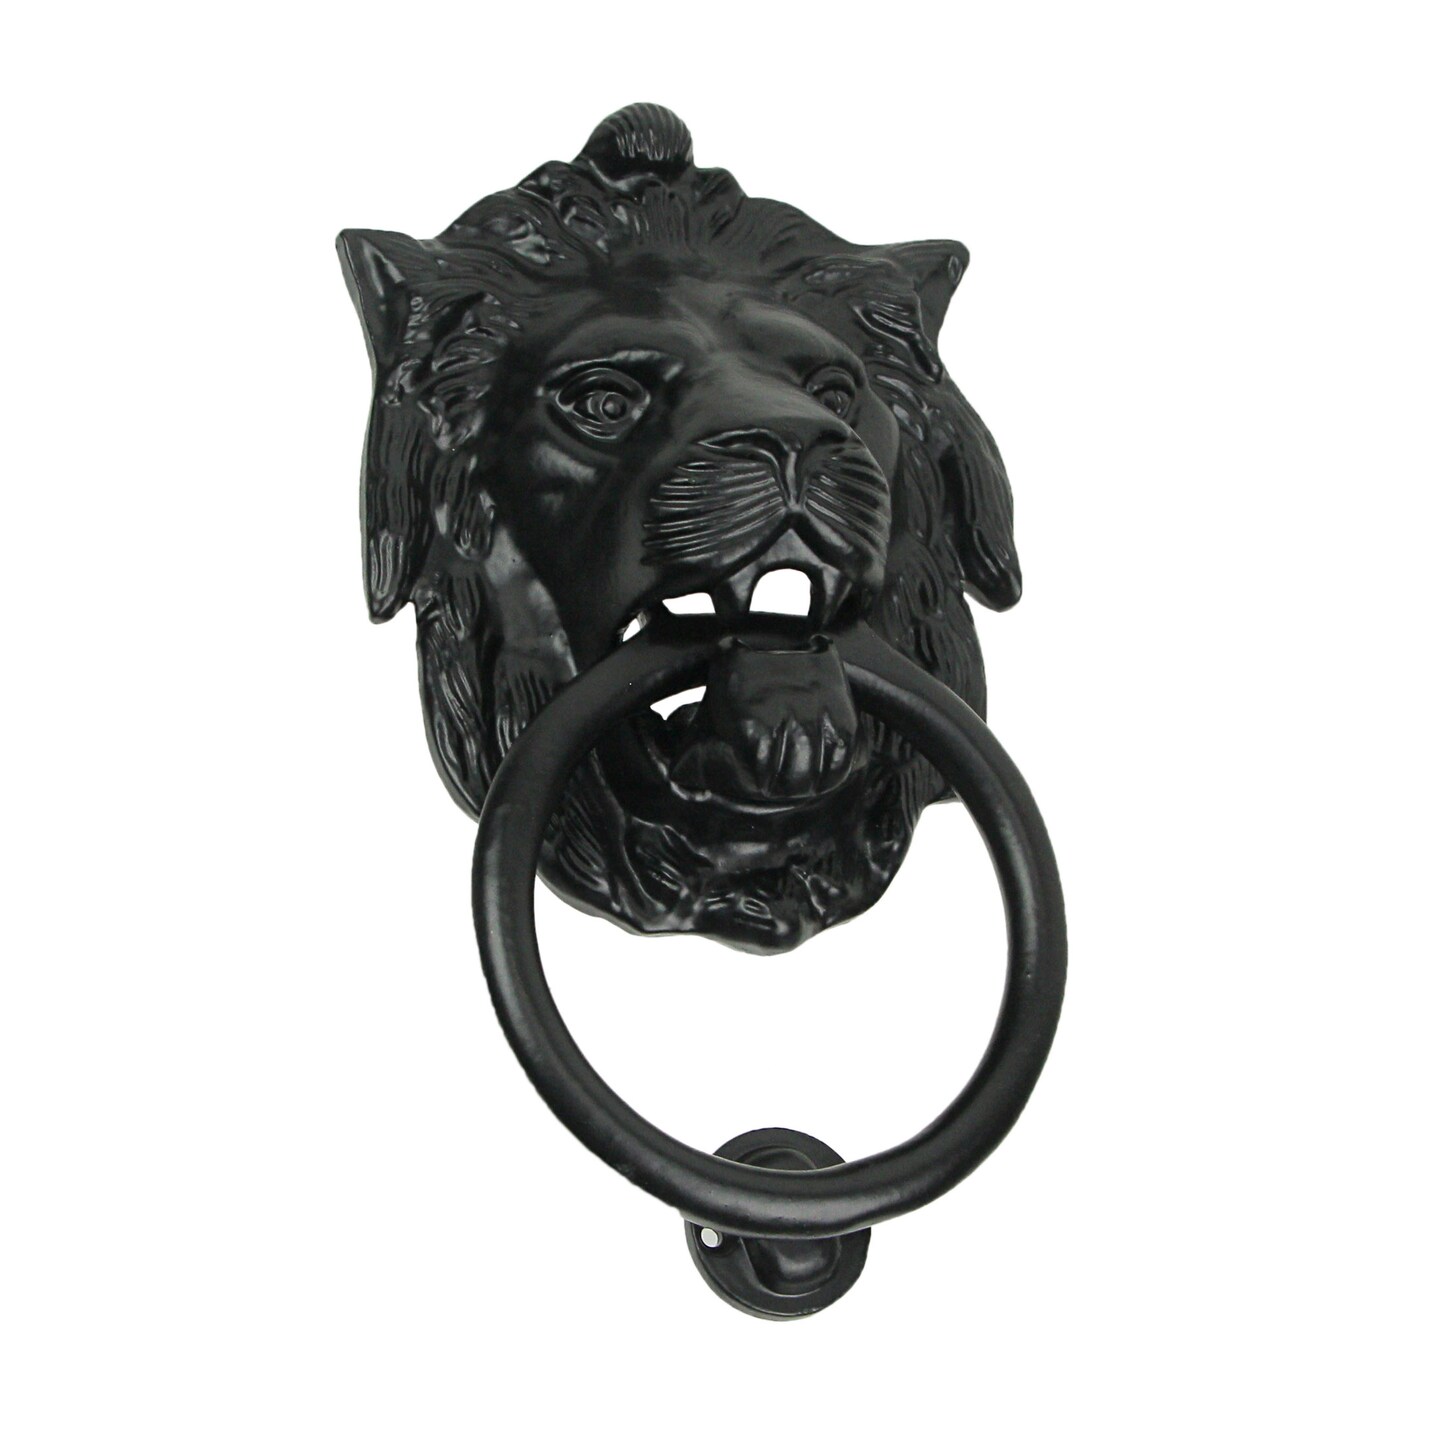 Black Enamel Cast Iron Lion Head Decorative Door Knocker Antique Home Accent